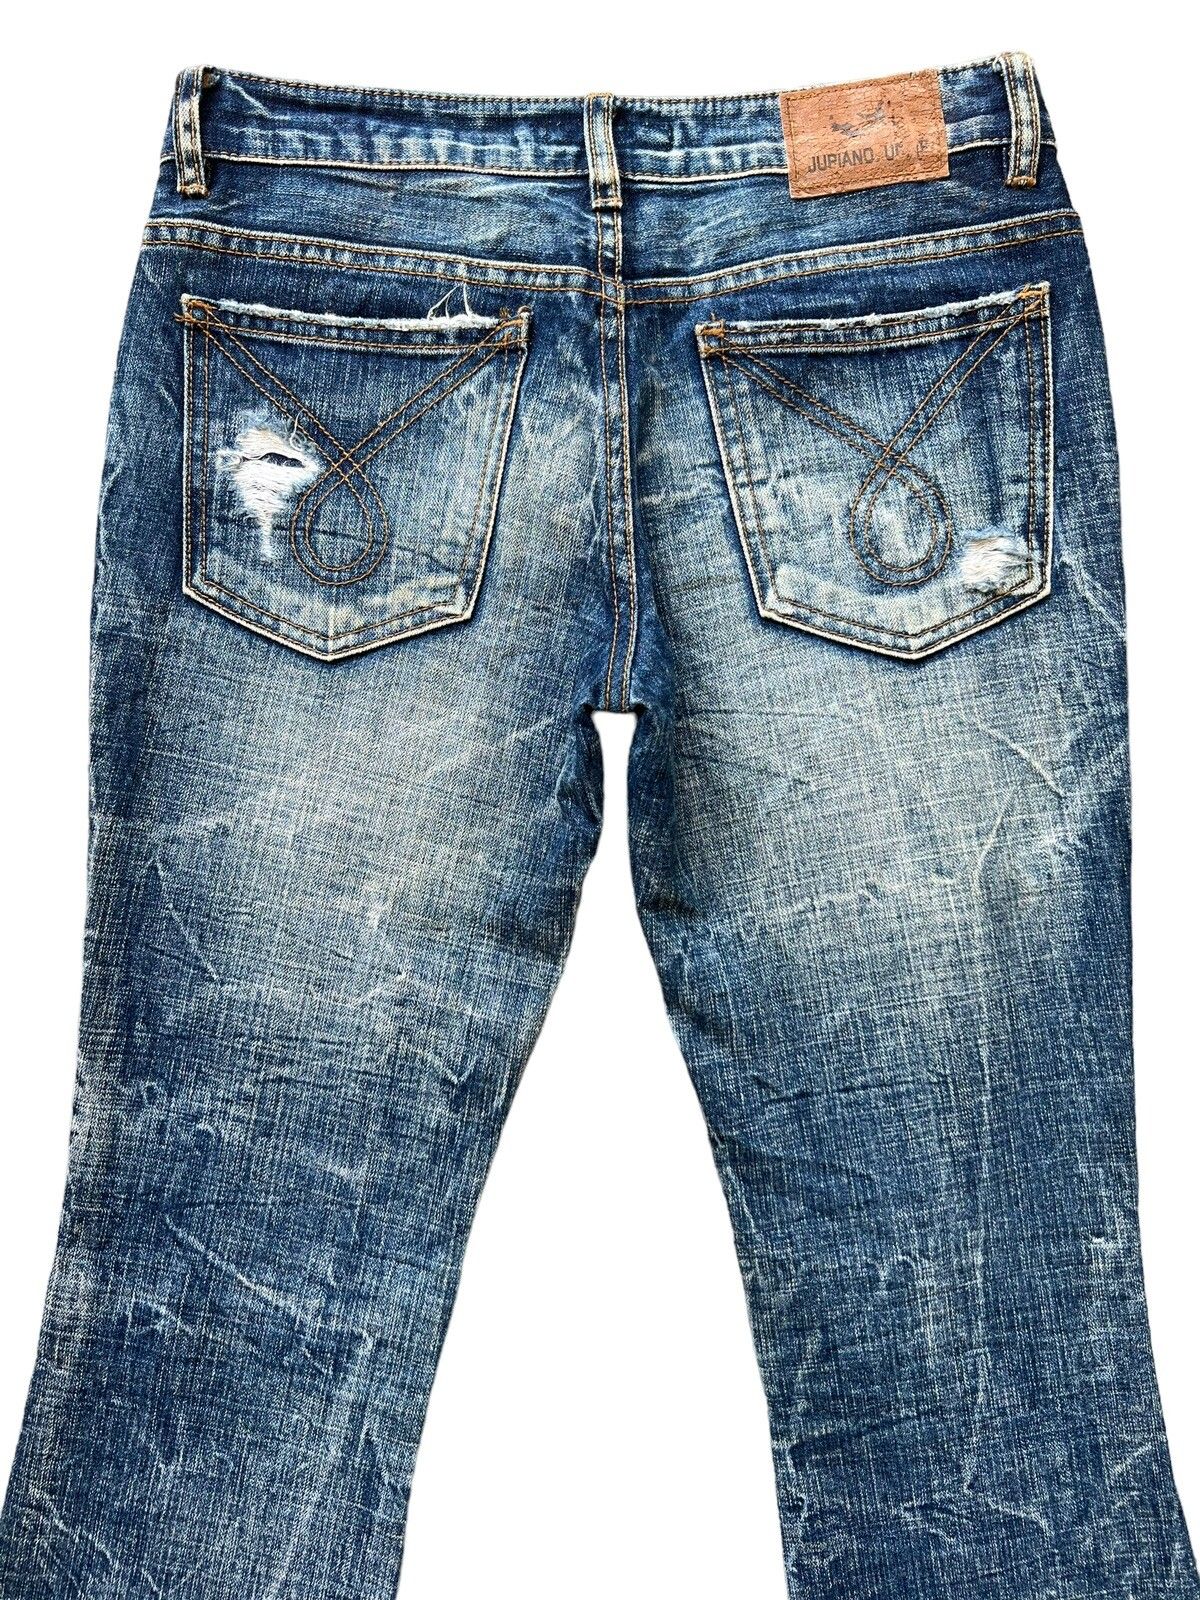 Distressed Denim - Juriano Jurrie Distressed Boot Cut Flare Denim Jeans 29x31 - 5